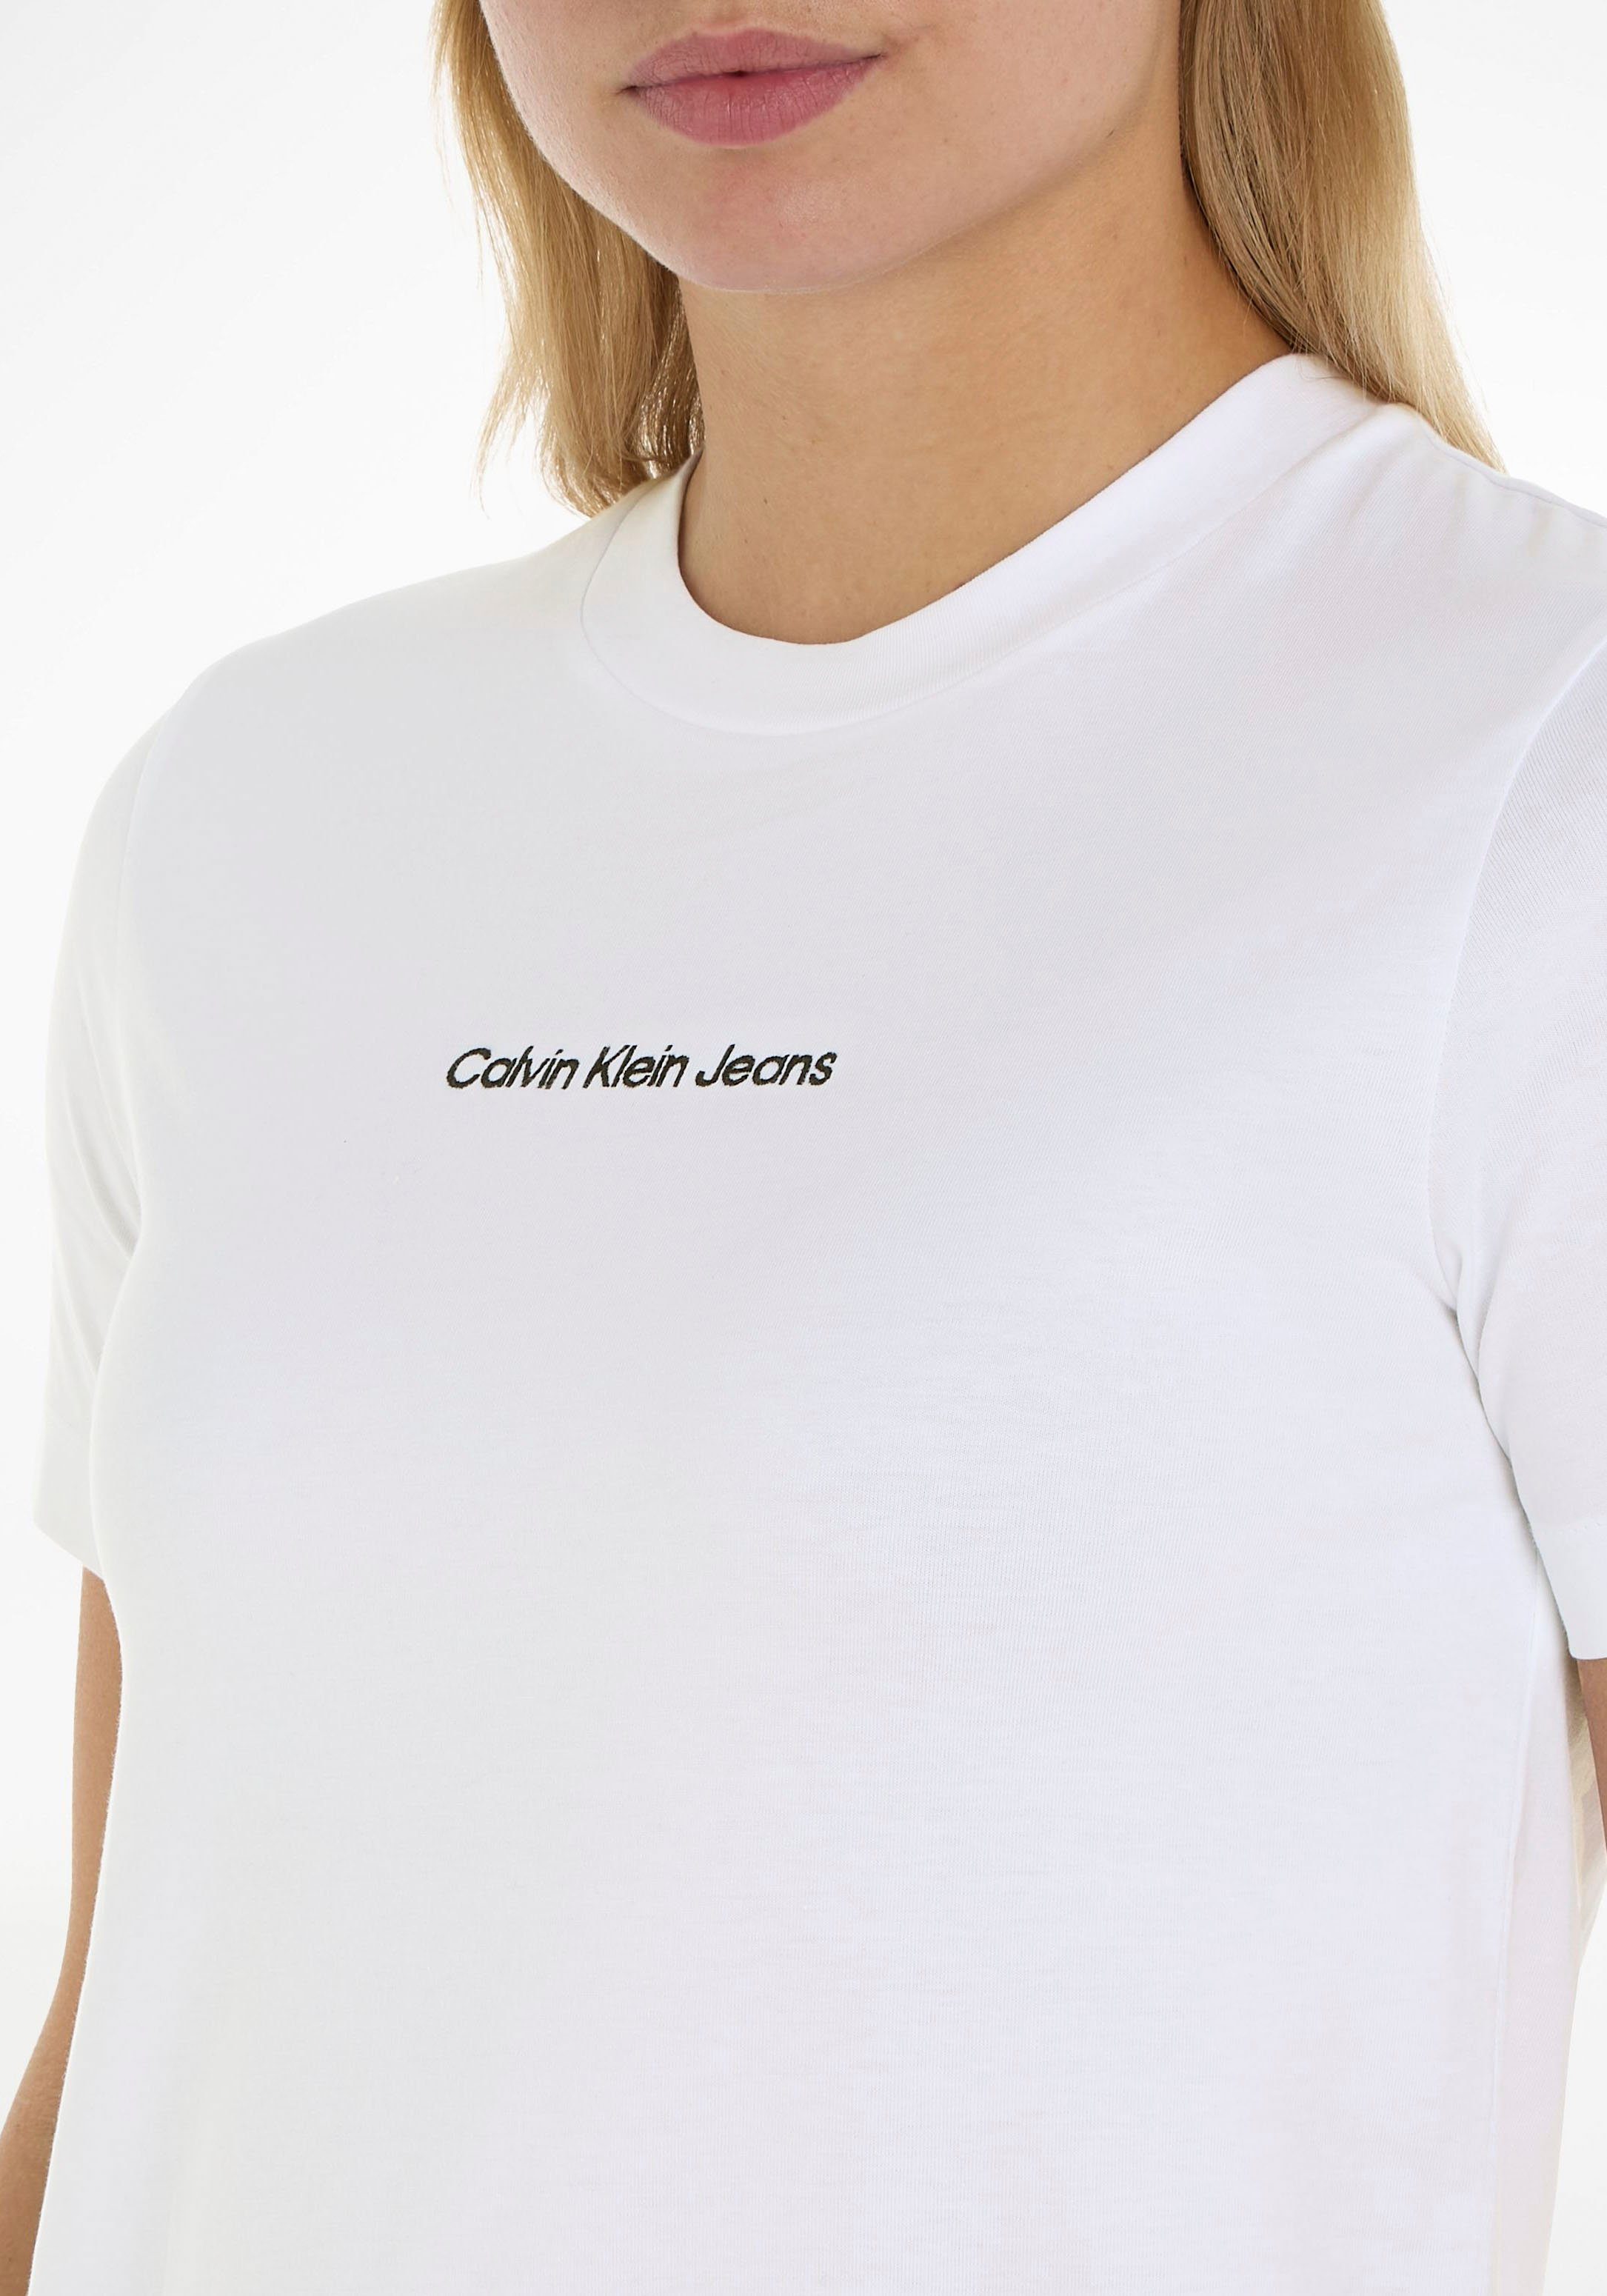 T-Shirt Klein Jeans Baumwolle Calvin weiß aus reiner